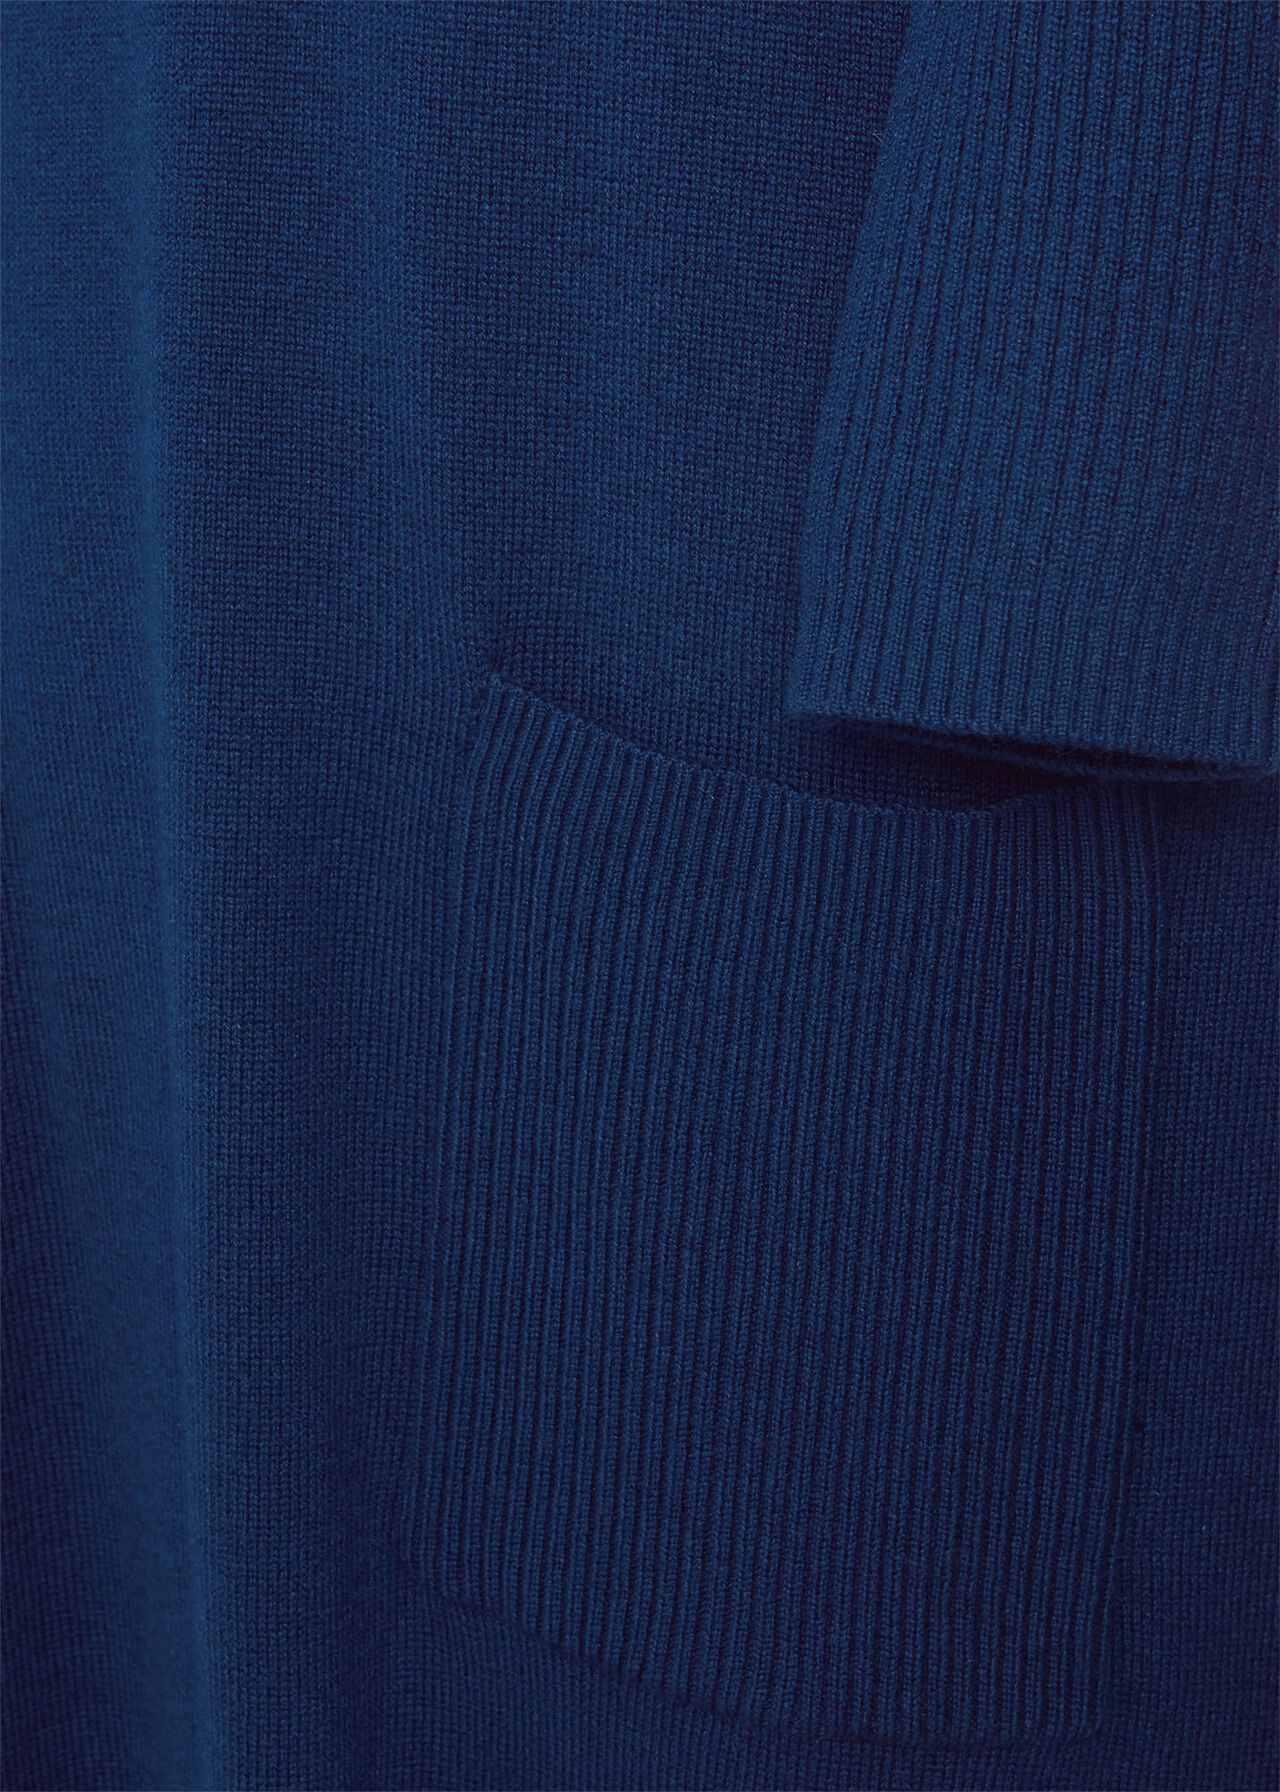 Devora Knitted Dress, Steel Blue, hi-res